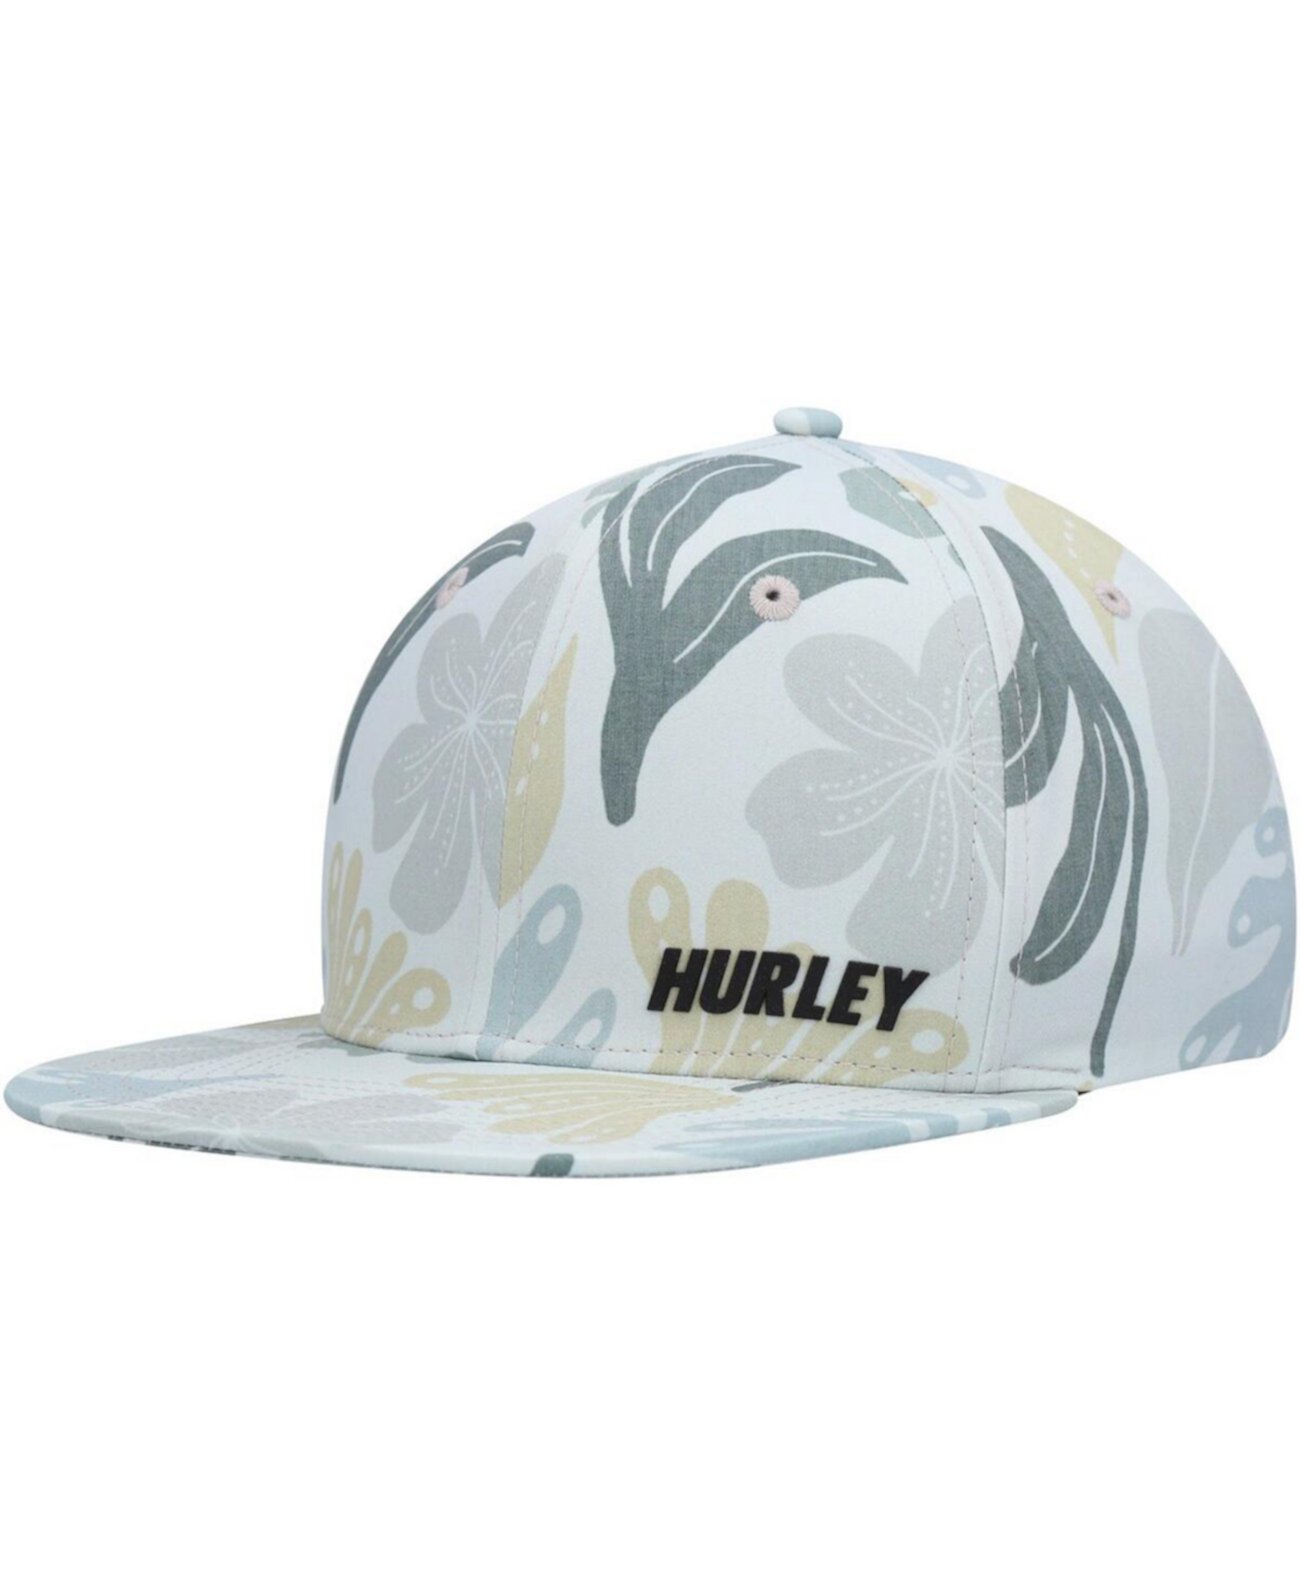 Мужская серая регулируемая шляпа на молнии Phantom Ridge Hurley